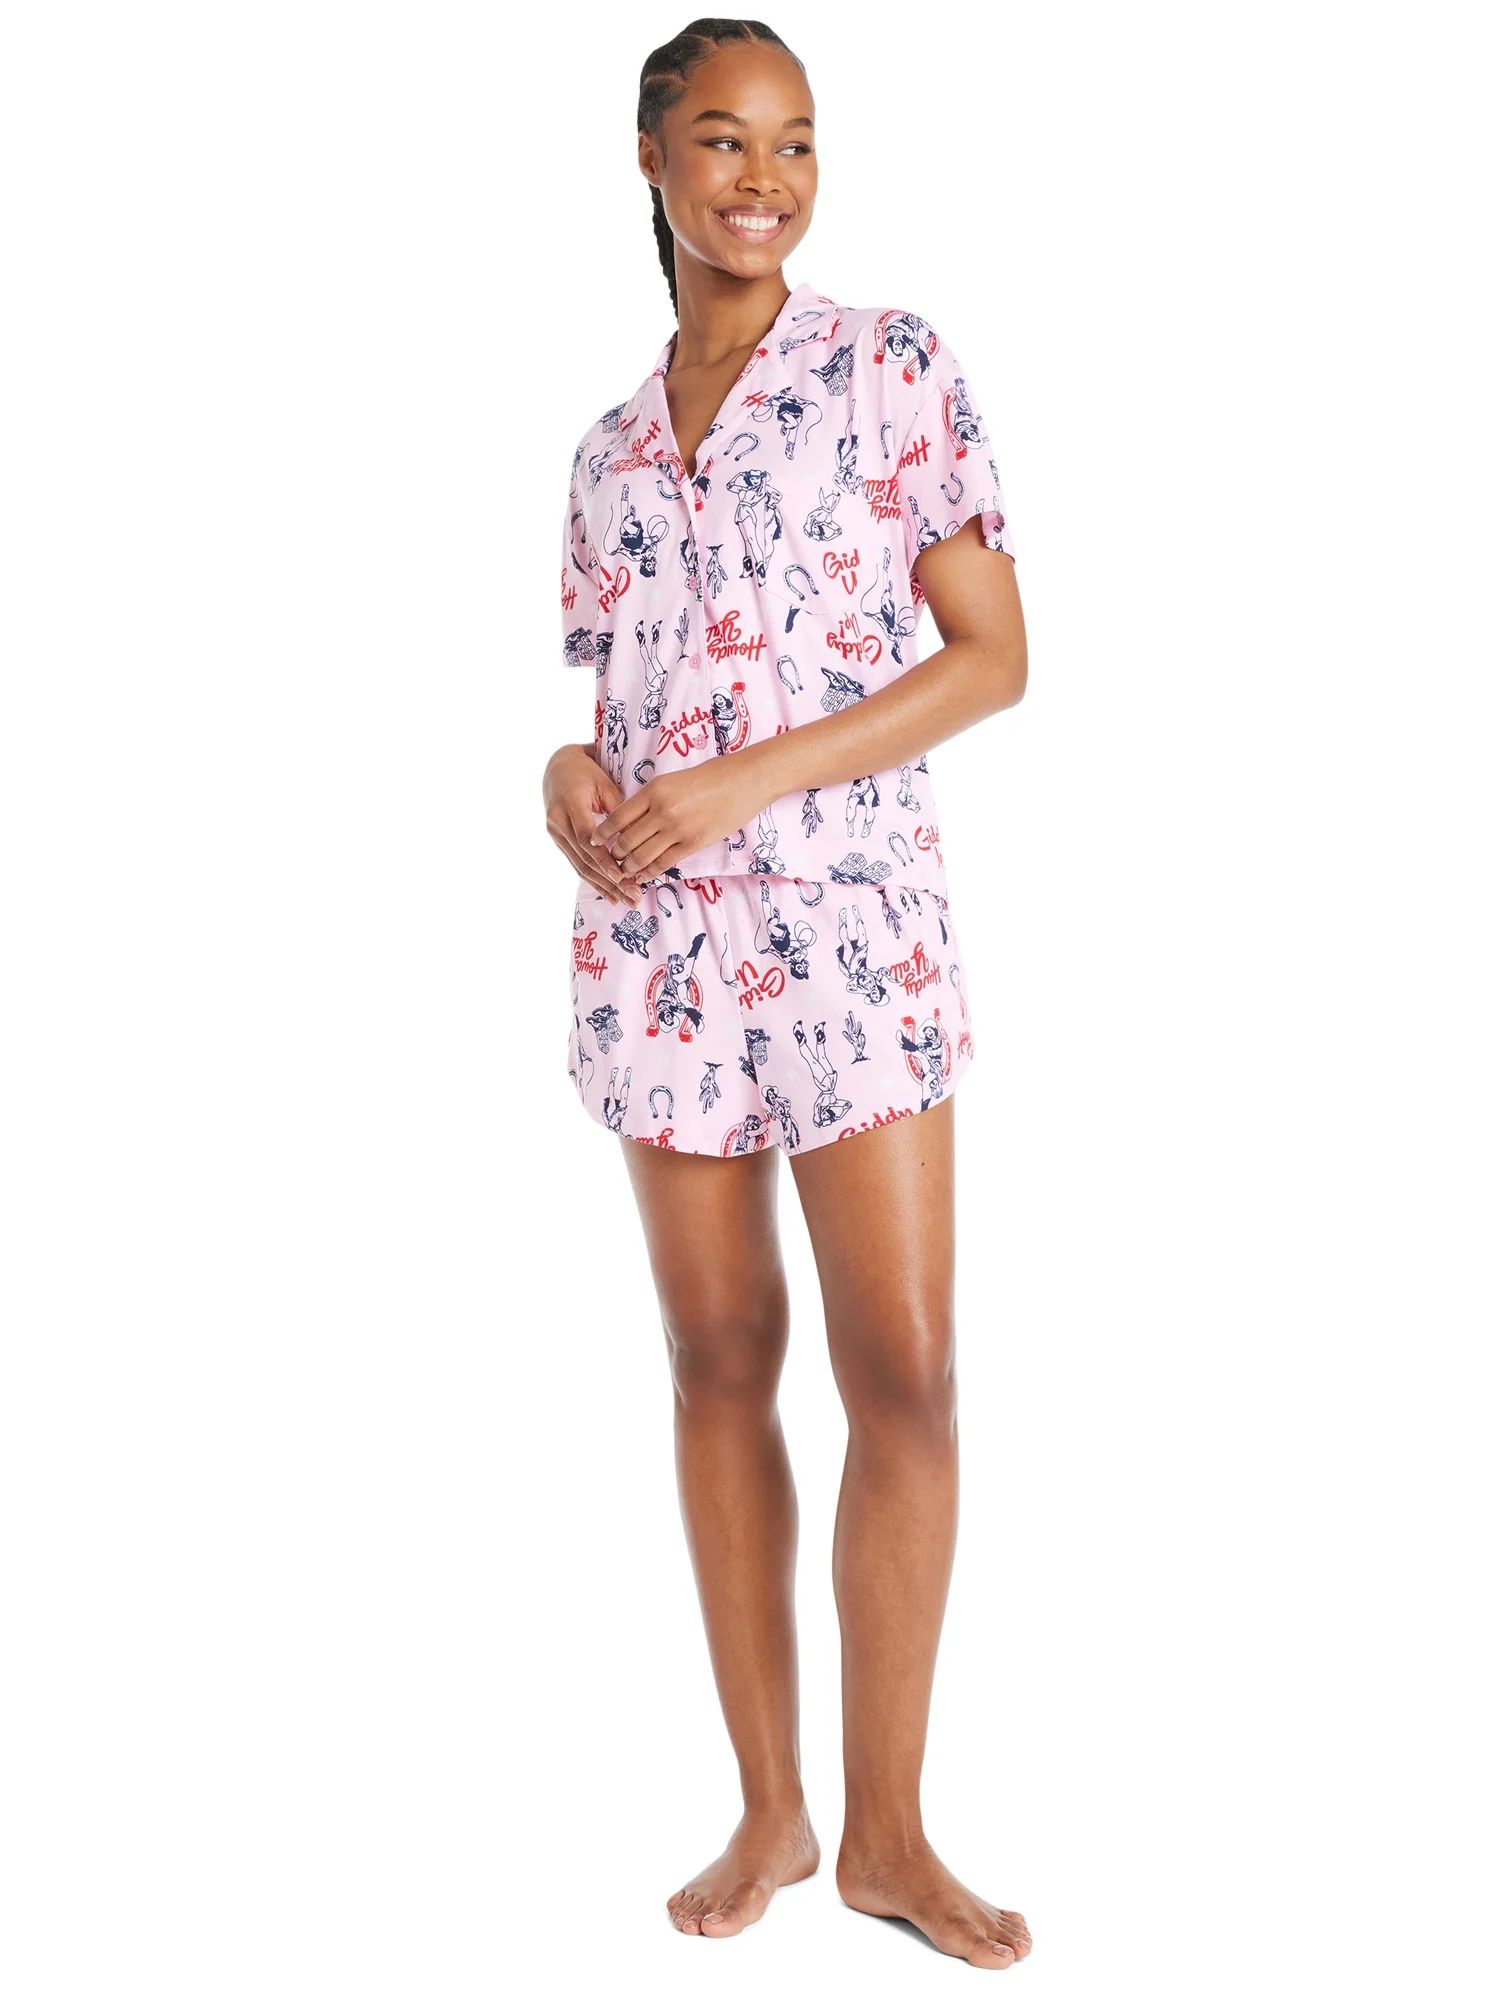 4th of July Women’s Shorty Pajama Set by Way to Celebrate, 2-Piece, Sizes XS to 3X | Walmart (US)